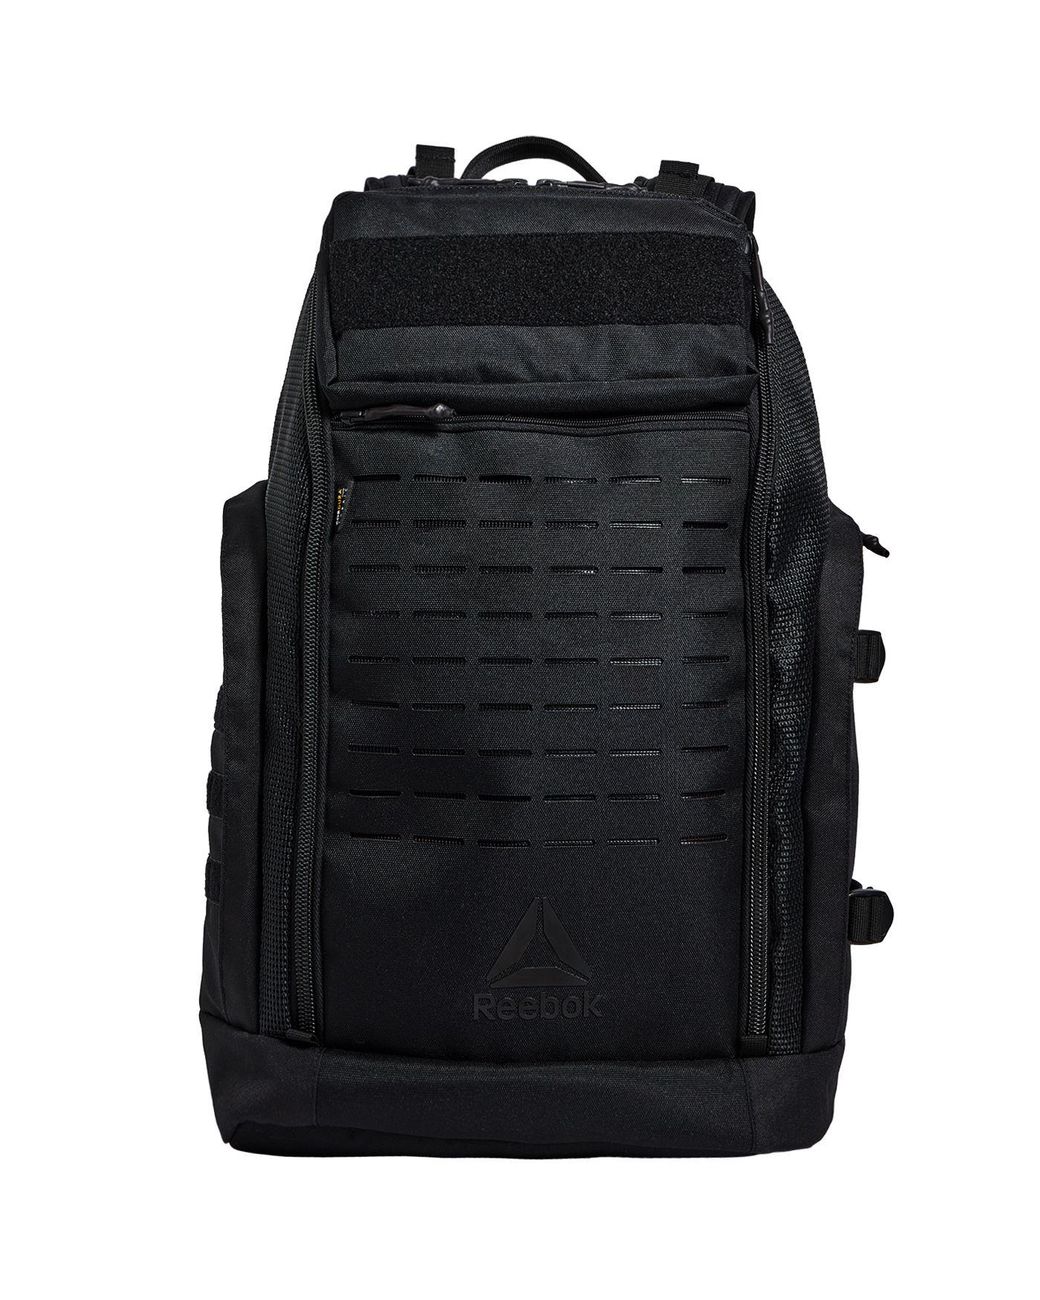 Reebok Crossfit Backpack in Black for Men